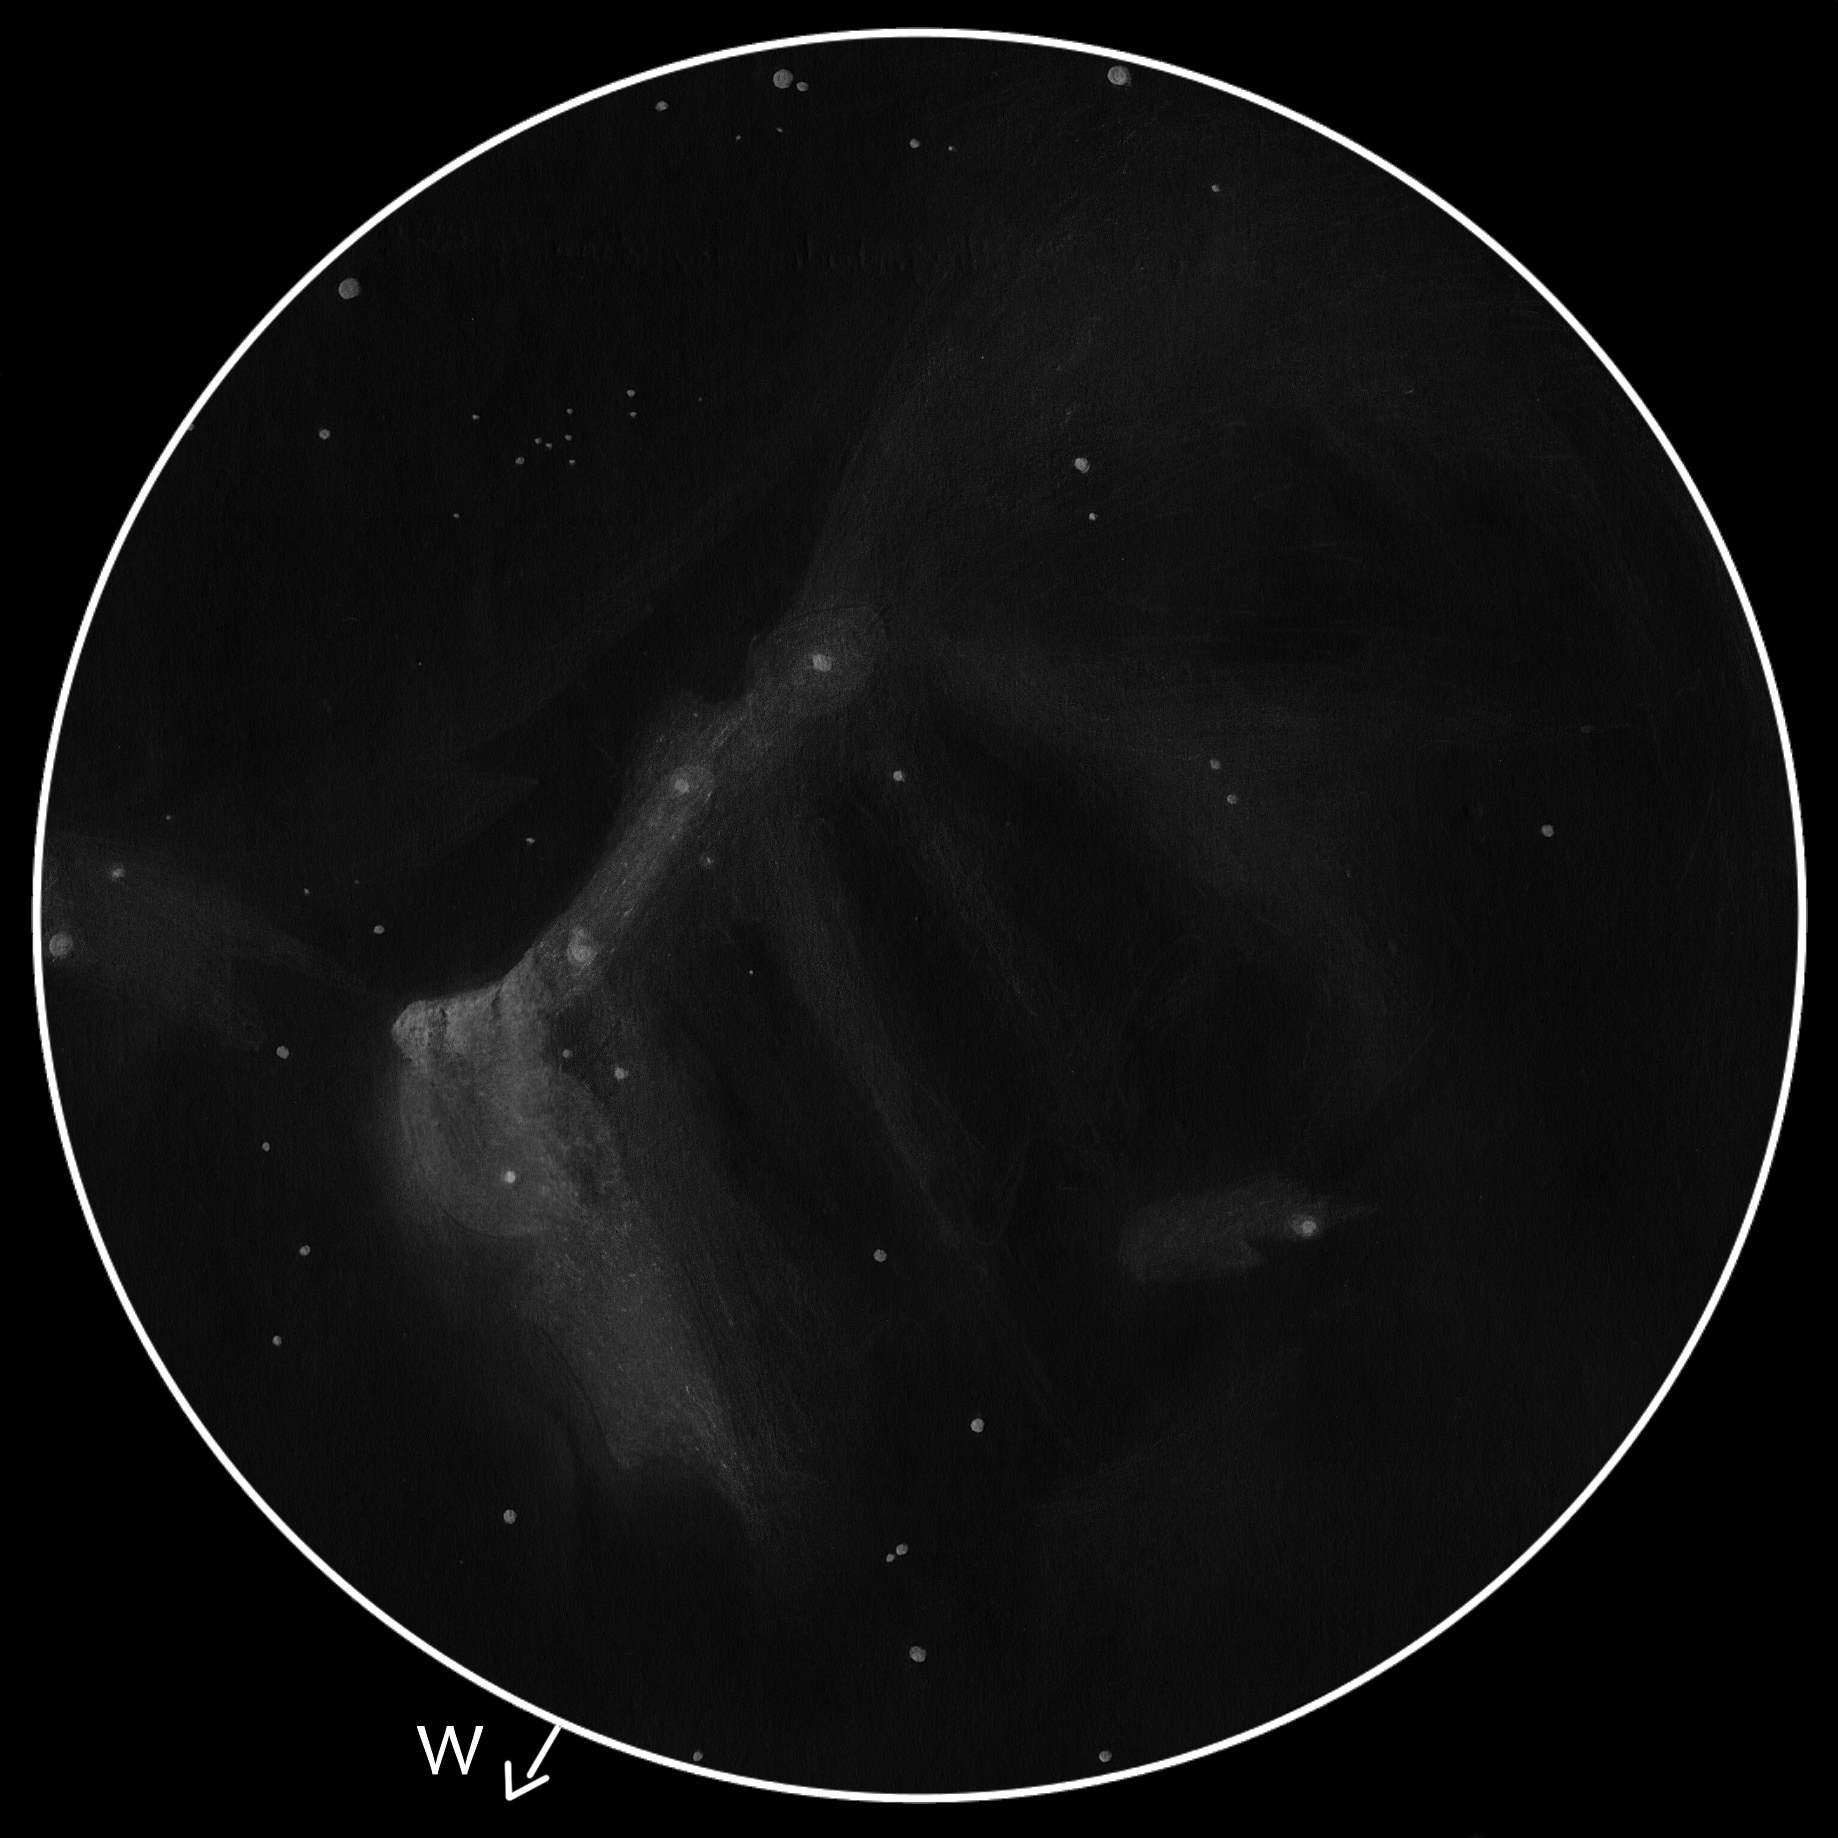 LDN 935, B355 SK, NGC 7000, LBN 354, LBN 356, DF Cyg